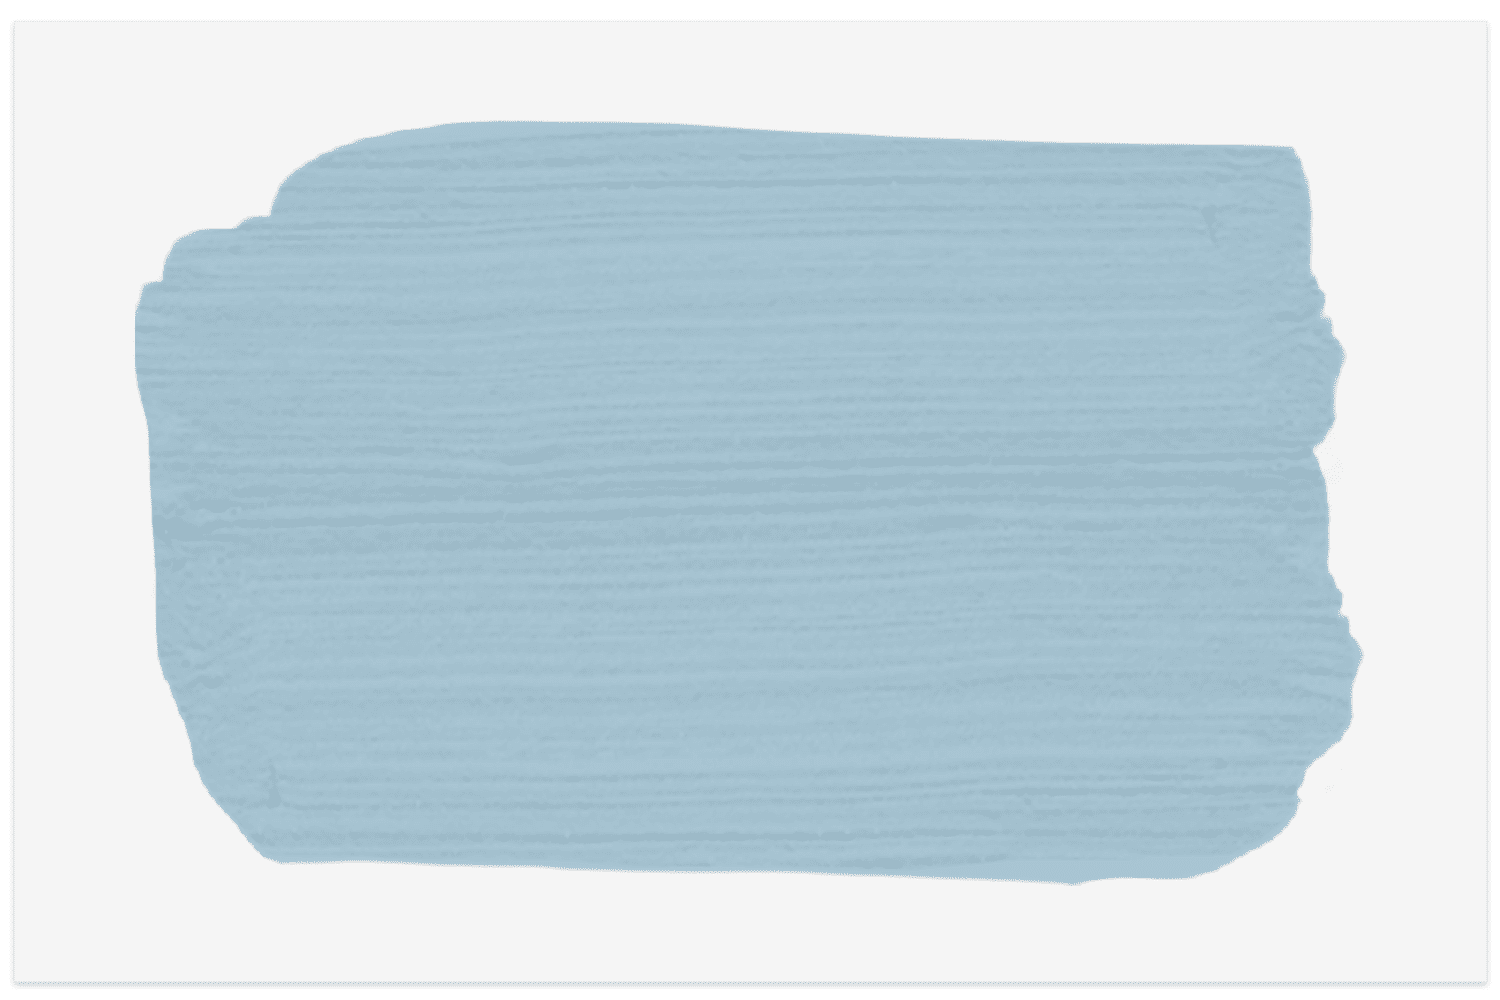 Muster des blauen Vogels aus der Farb- und Papierbibliothek